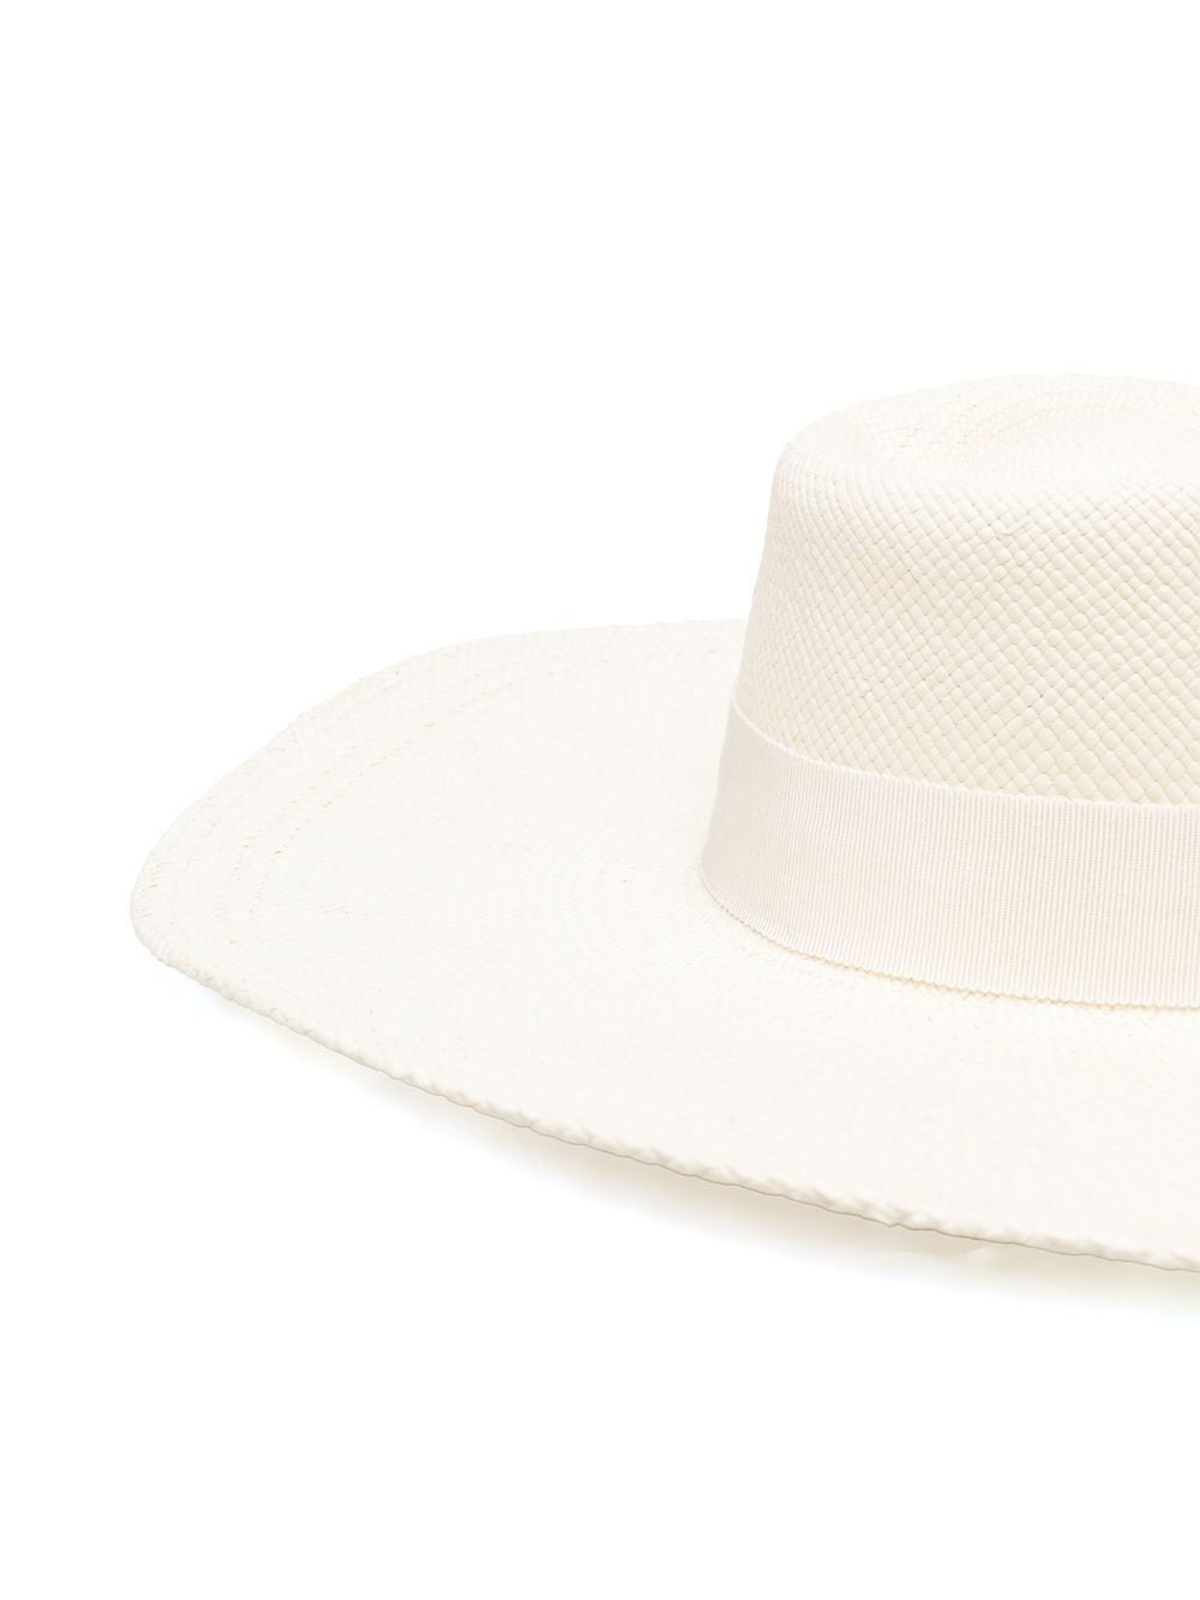 Shop Ruslan Baginskiy Woven Wicker Designed Sun Hat With Logo In Blanco